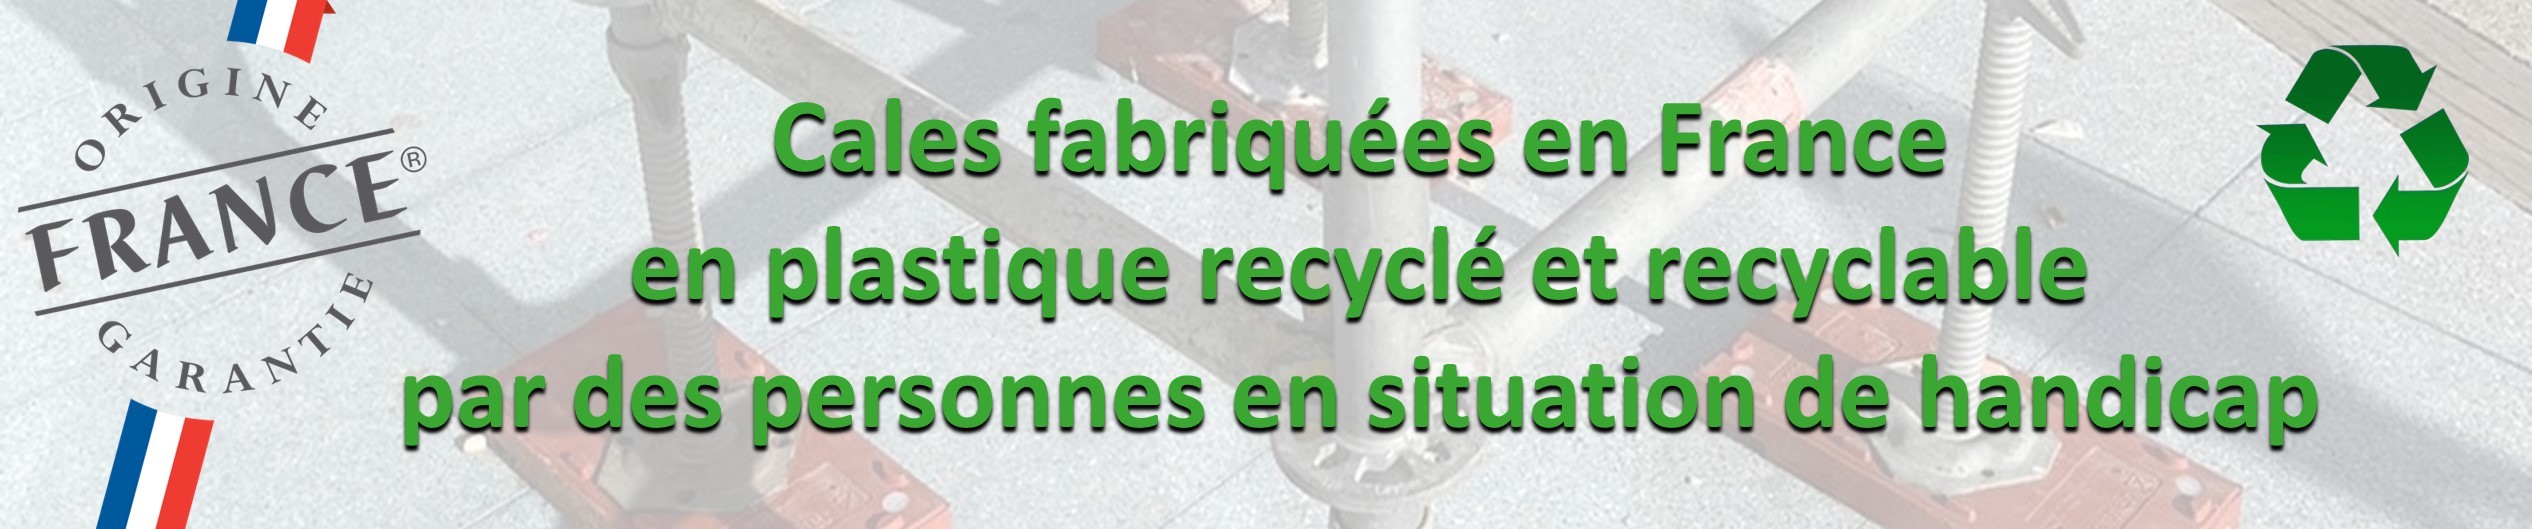 cales fabriquée en France, en plastique recyclé en recyclable, par des personnes en situation de handicap